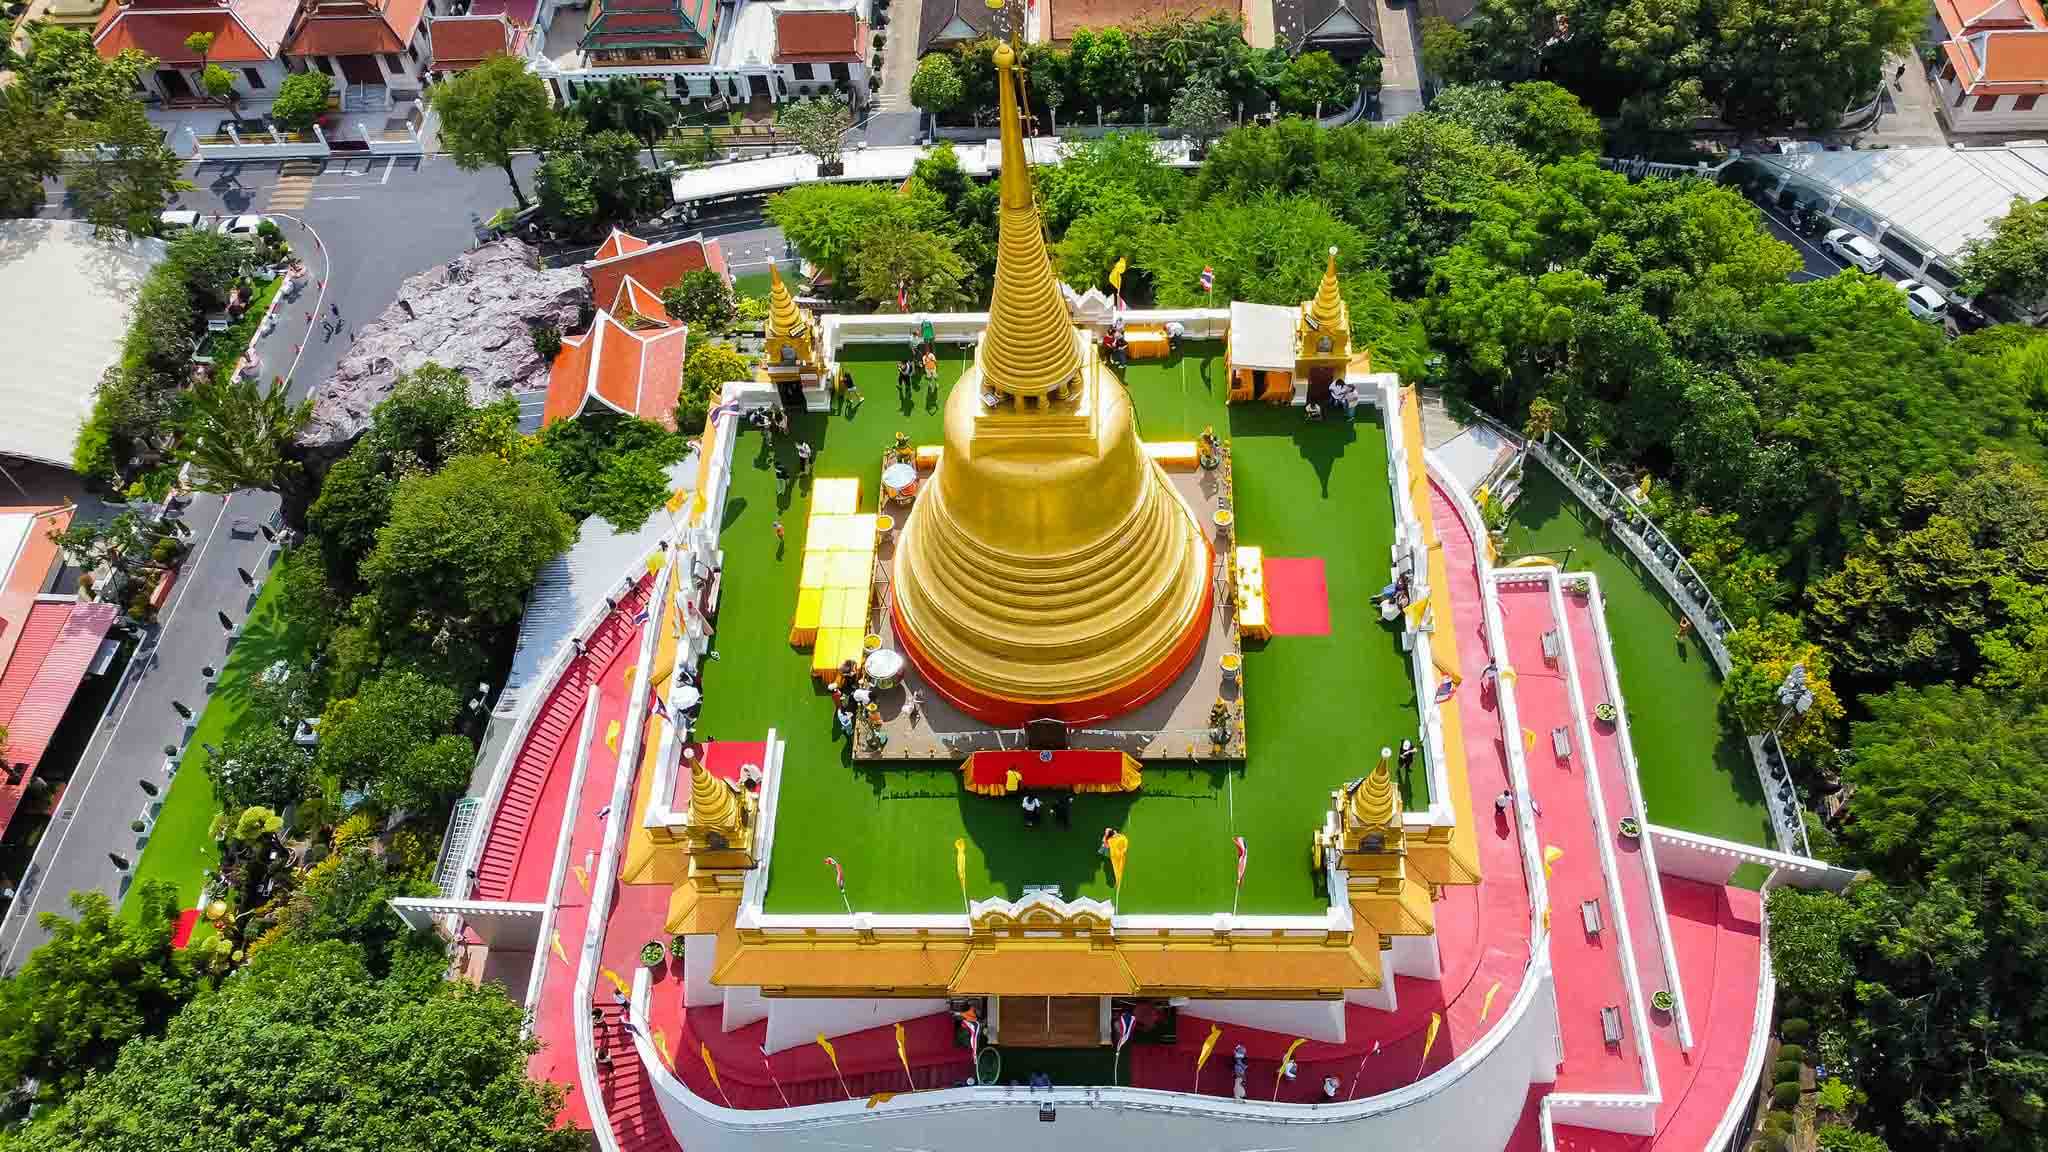 Du lịch Thái Lan Bangkok - Pattaya 5 ngày khời hành từ Sài Gòn